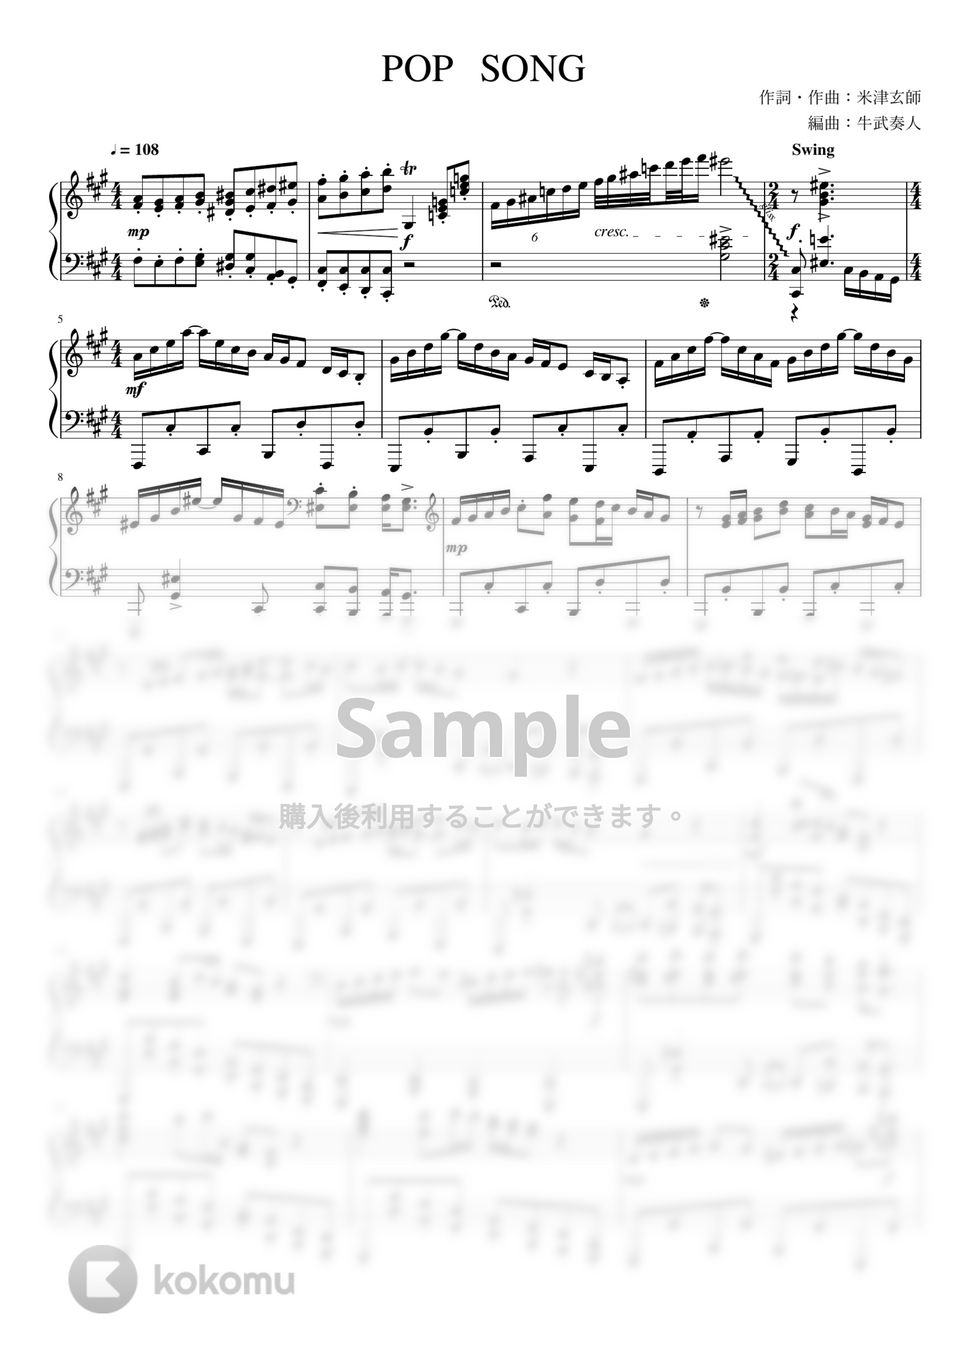 米津玄師 - POP SONG (上級ピアノソロ) by 牛武奏人